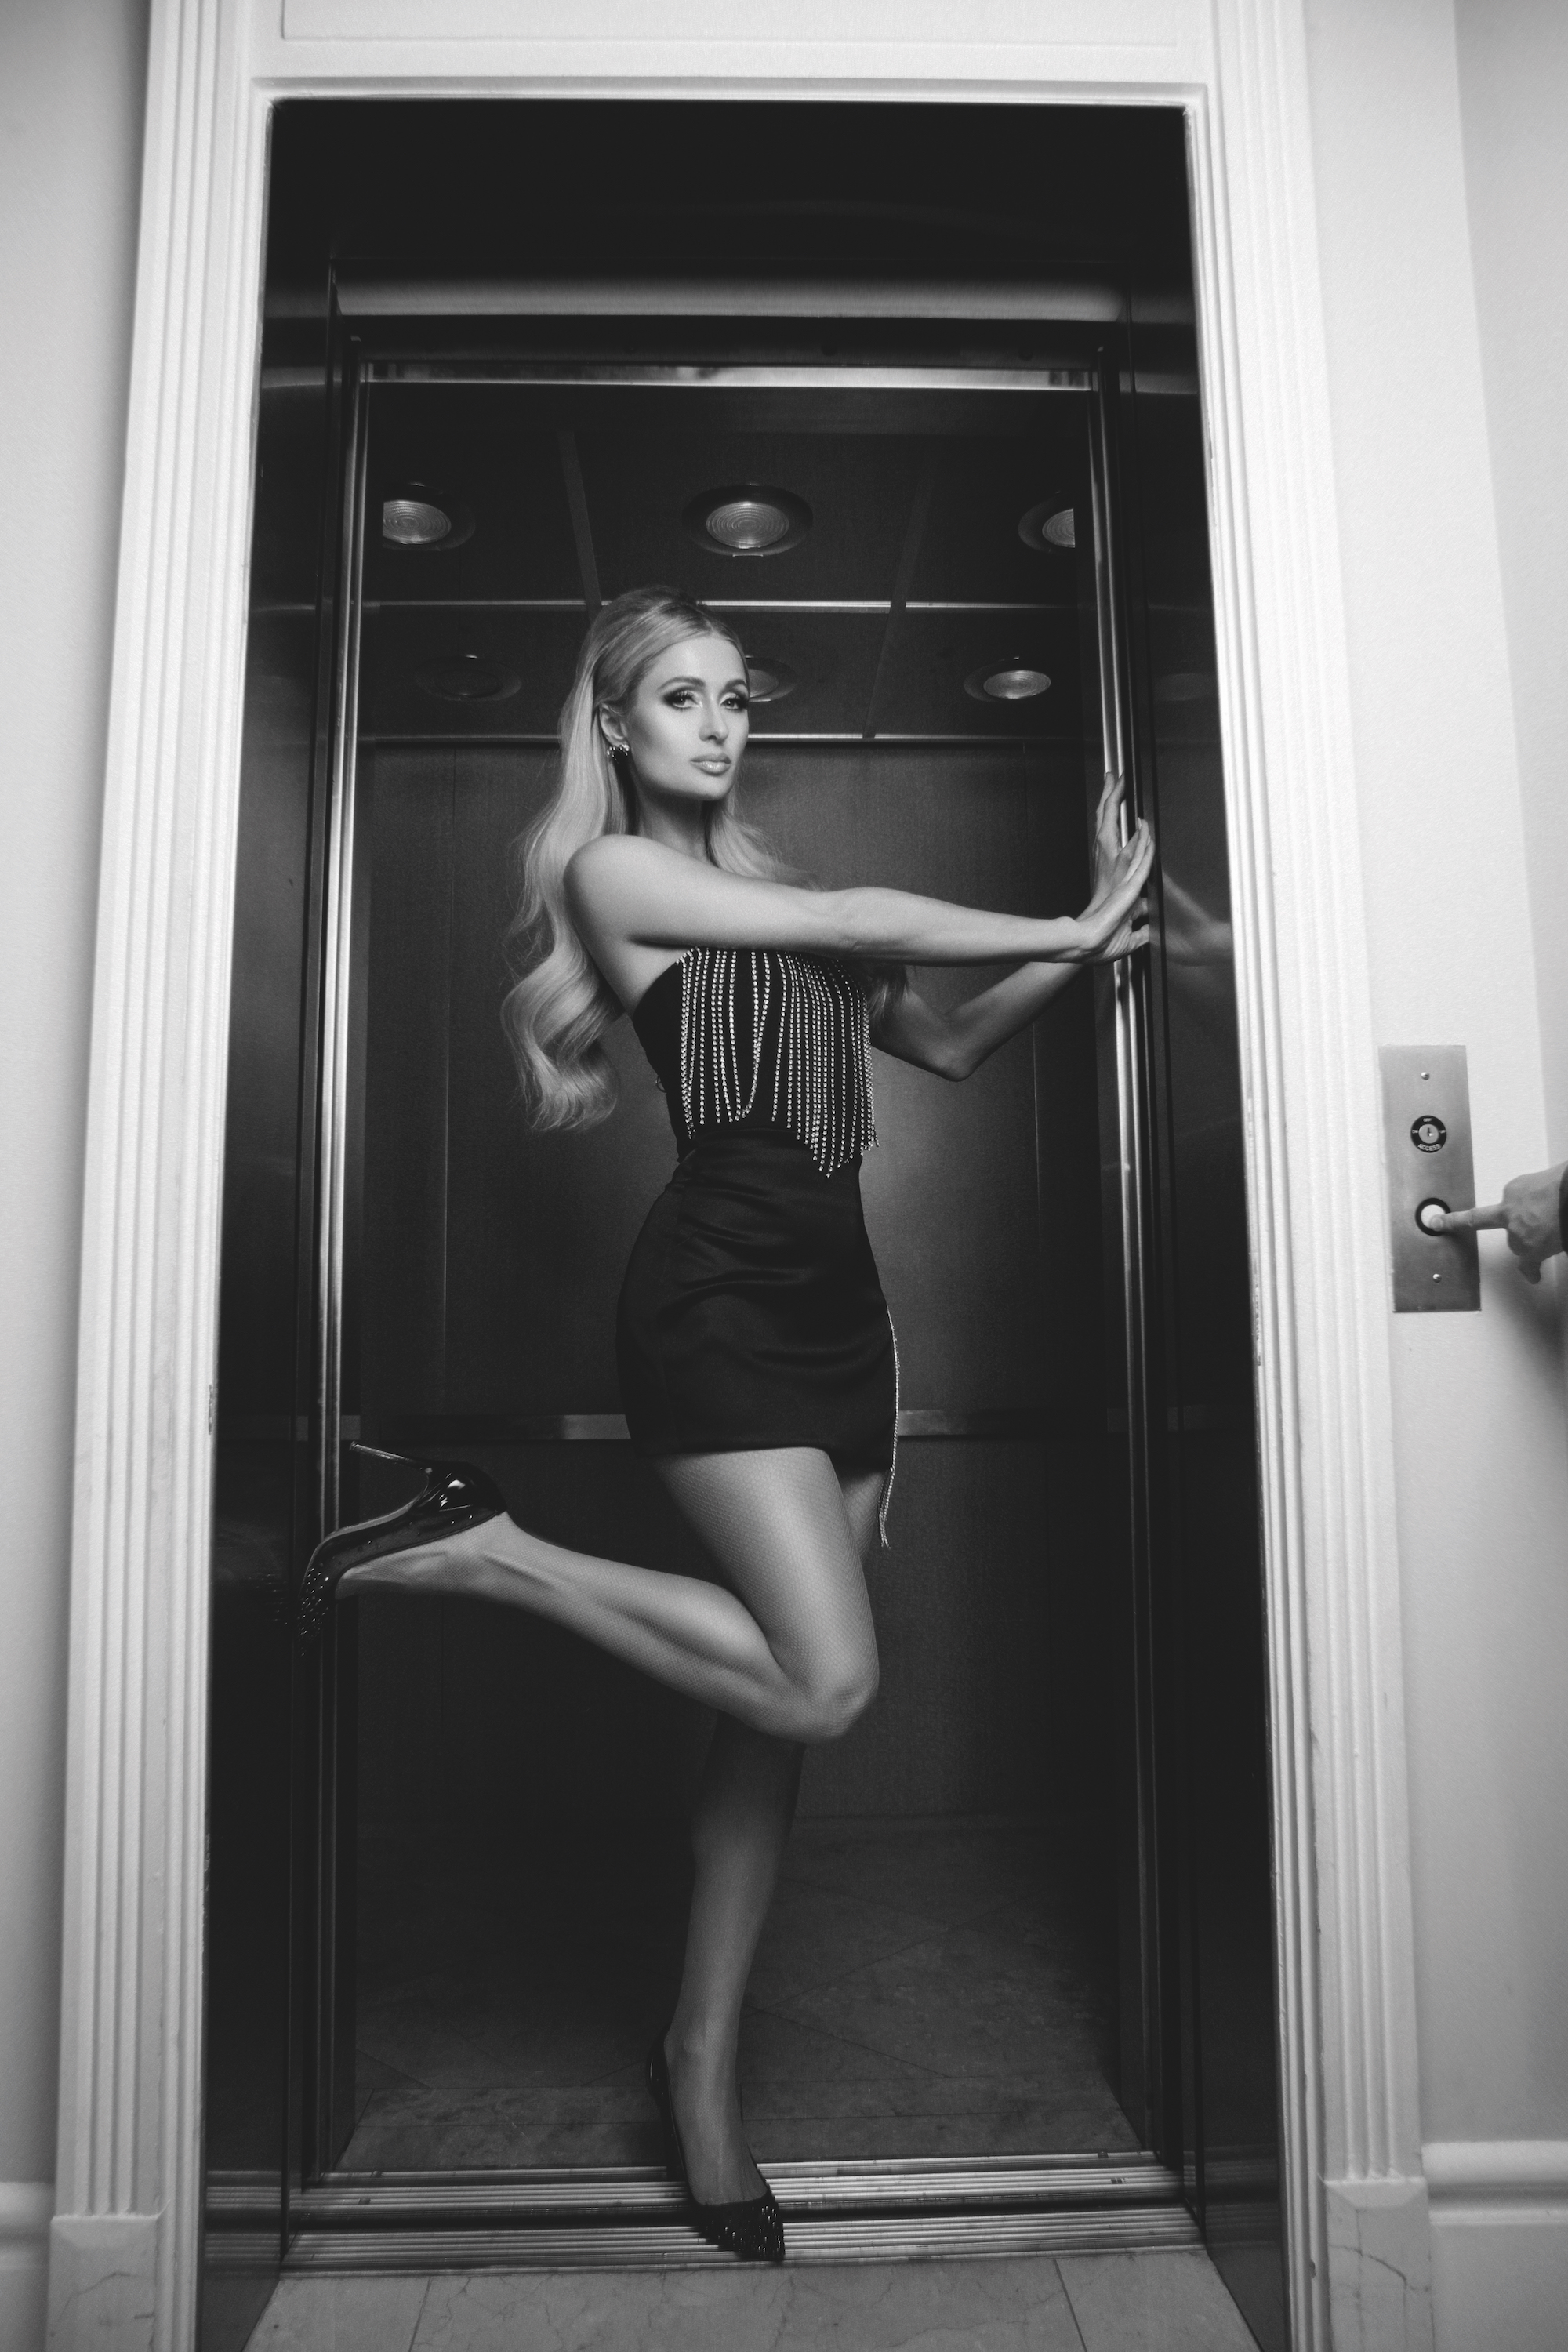 Paris Hilton suintant Sex Appeal dans New Shoot! - Photo 6